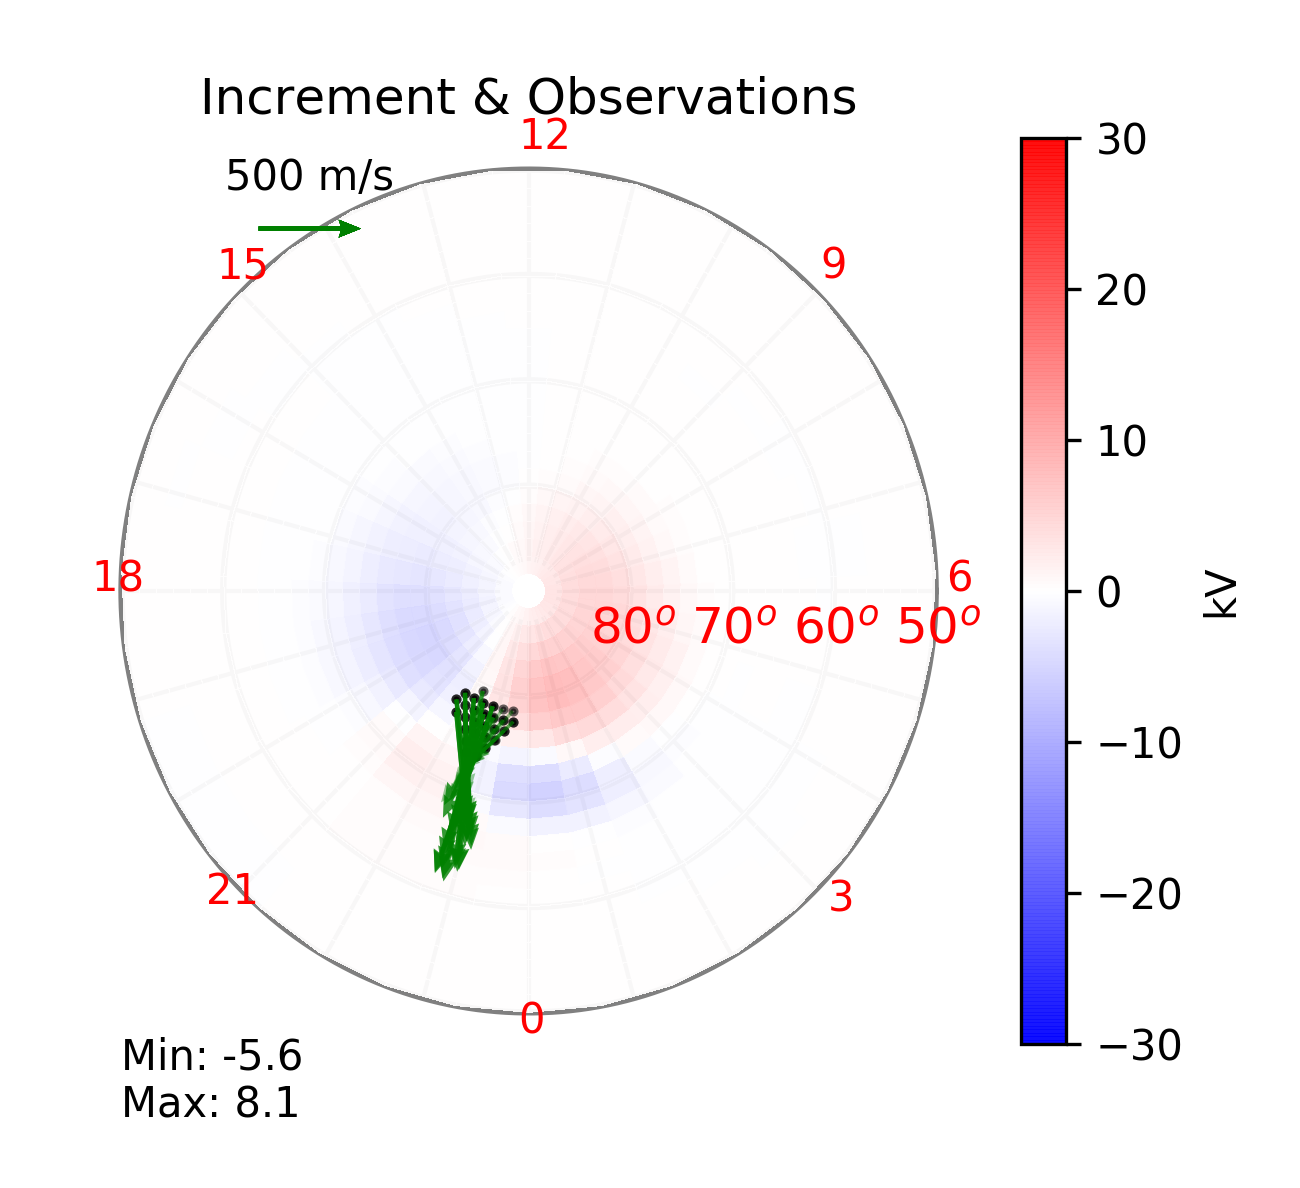 SuperDARN data for 05-29-2010 at 09:40 UT